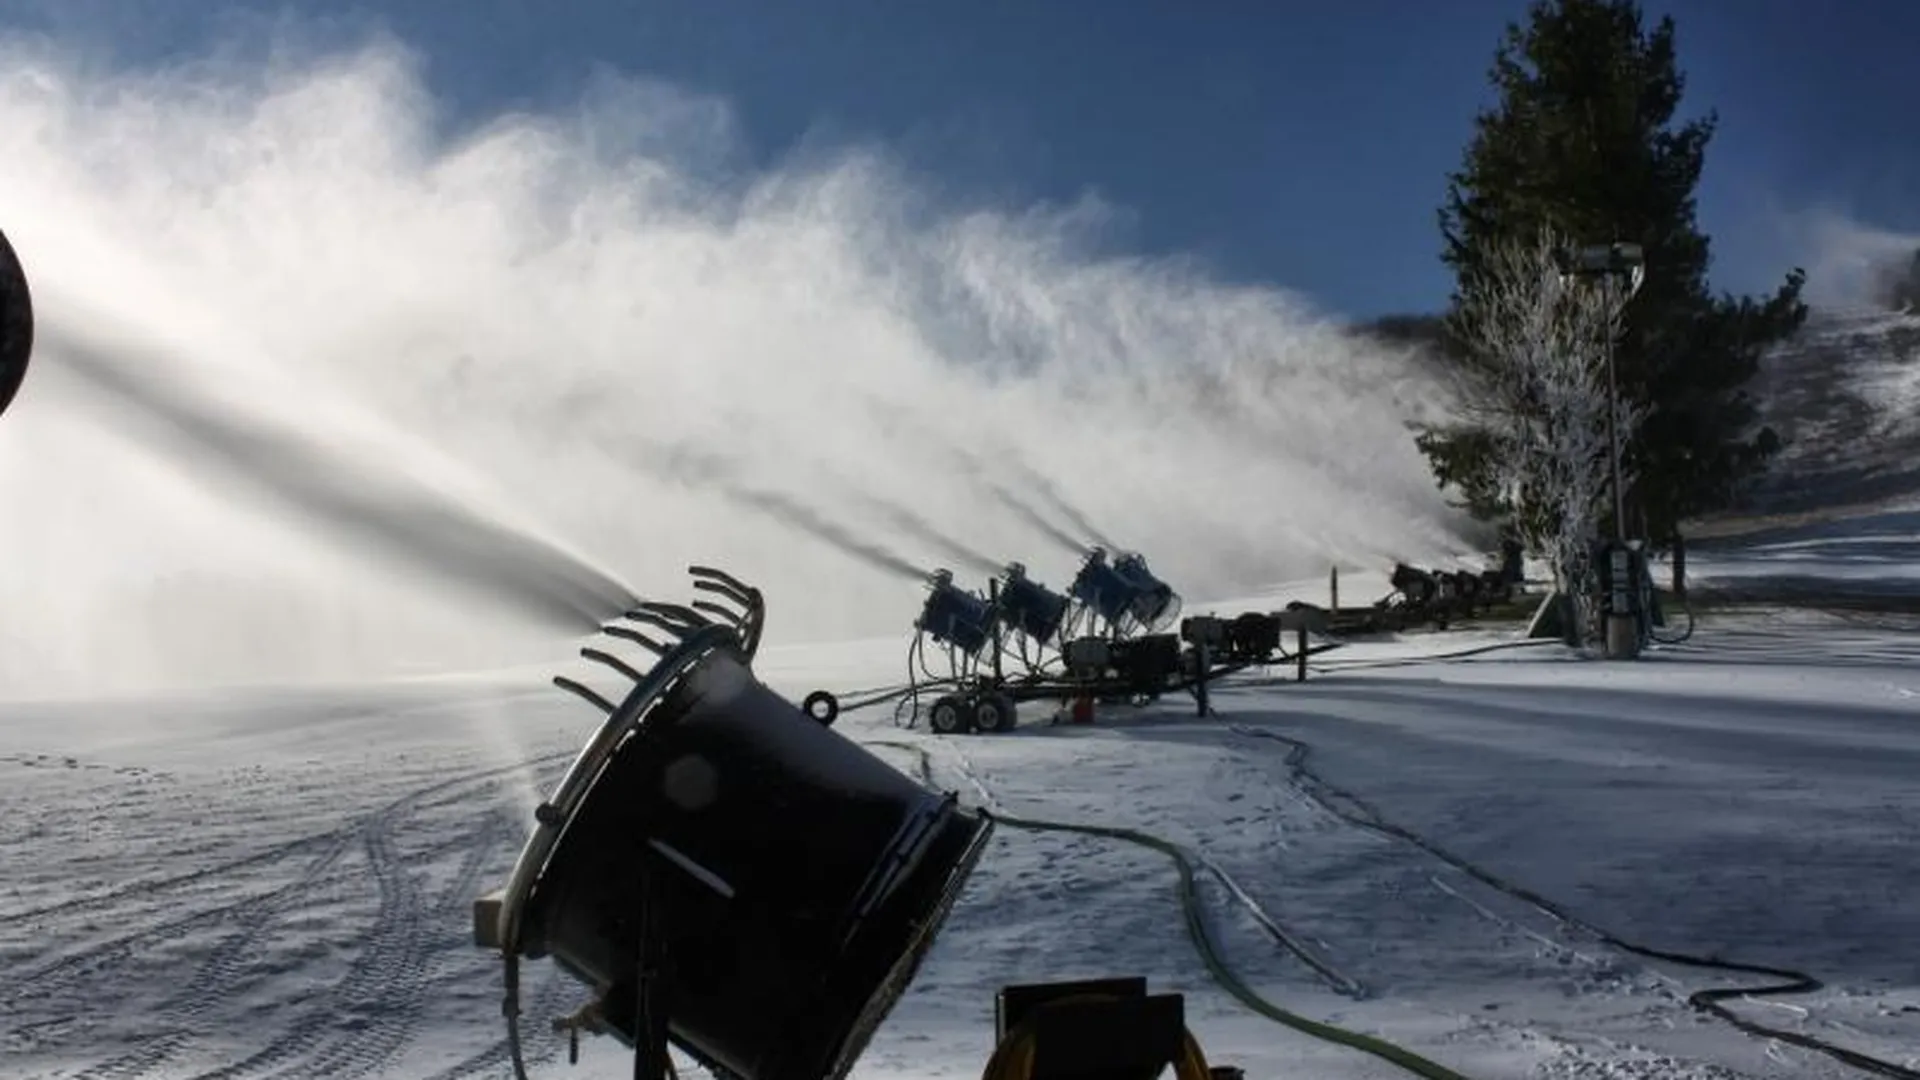 Трассу для лыжников в Химках построят с помощью снеговой пушки